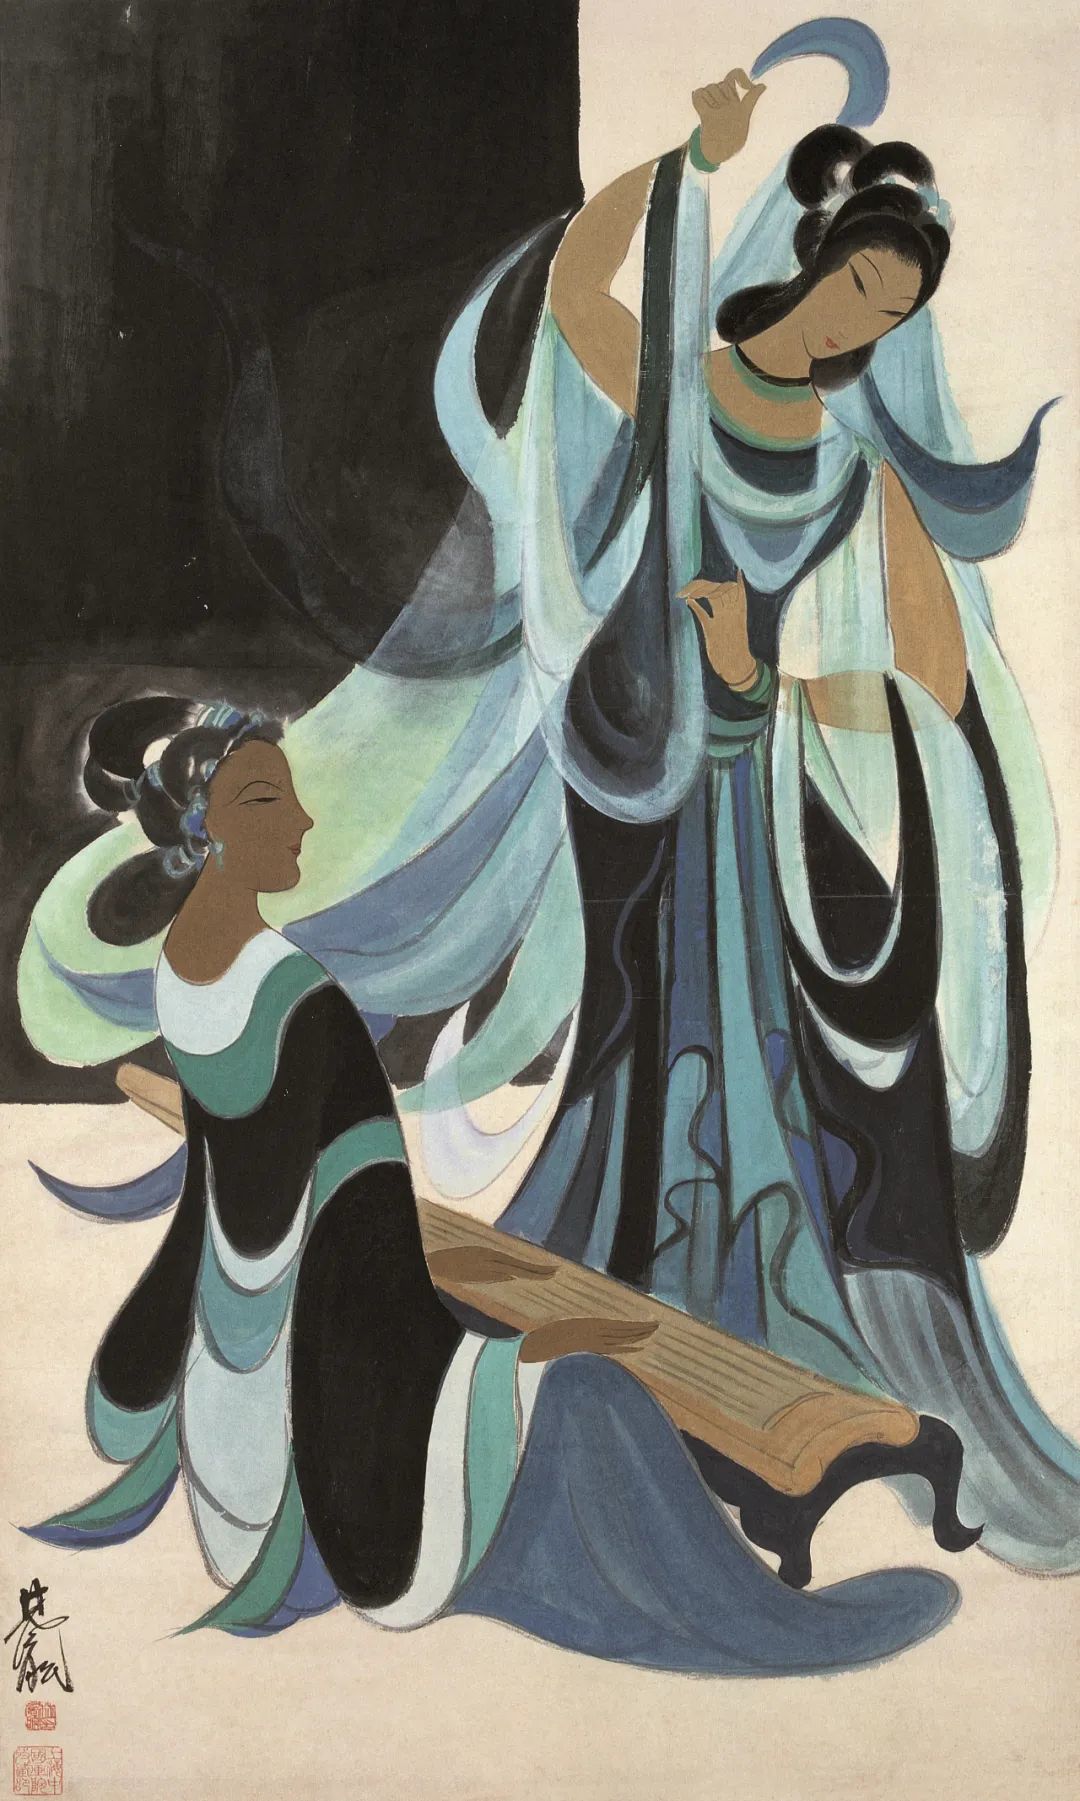 《舞蹈》，林风眠，中国画，122×72.5cm 1950年代，上海中国画院藏